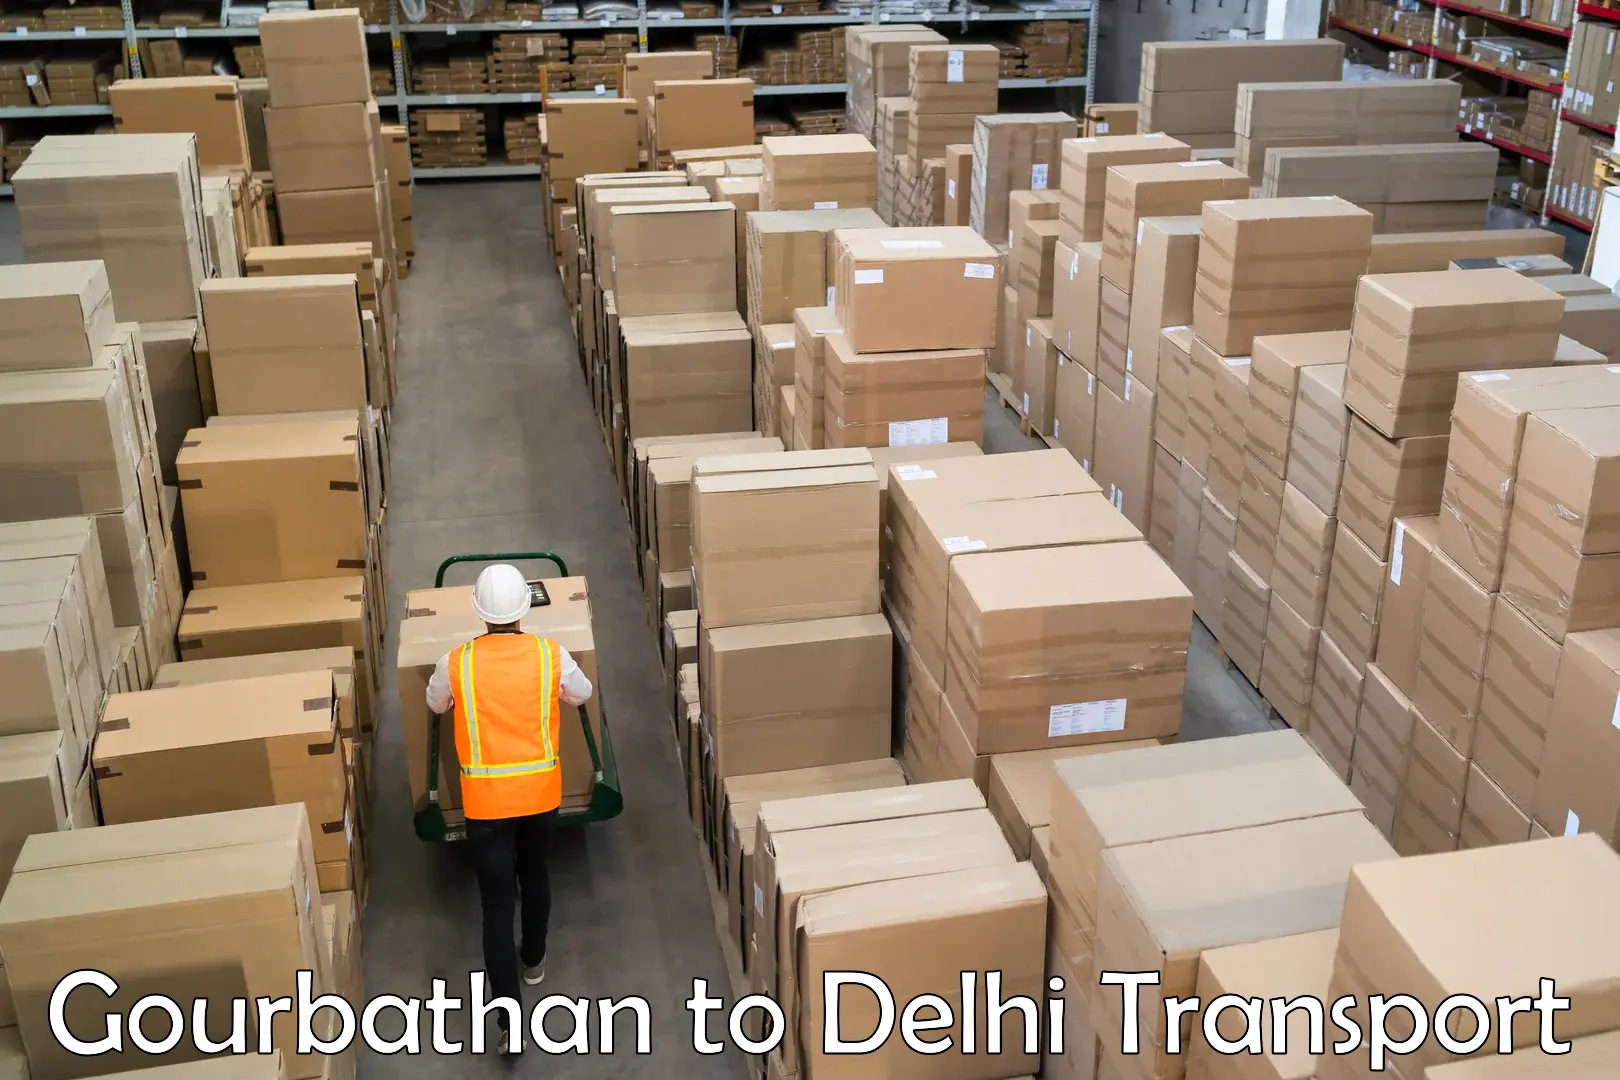 Road transport online services Gourbathan to Jamia Millia Islamia New Delhi